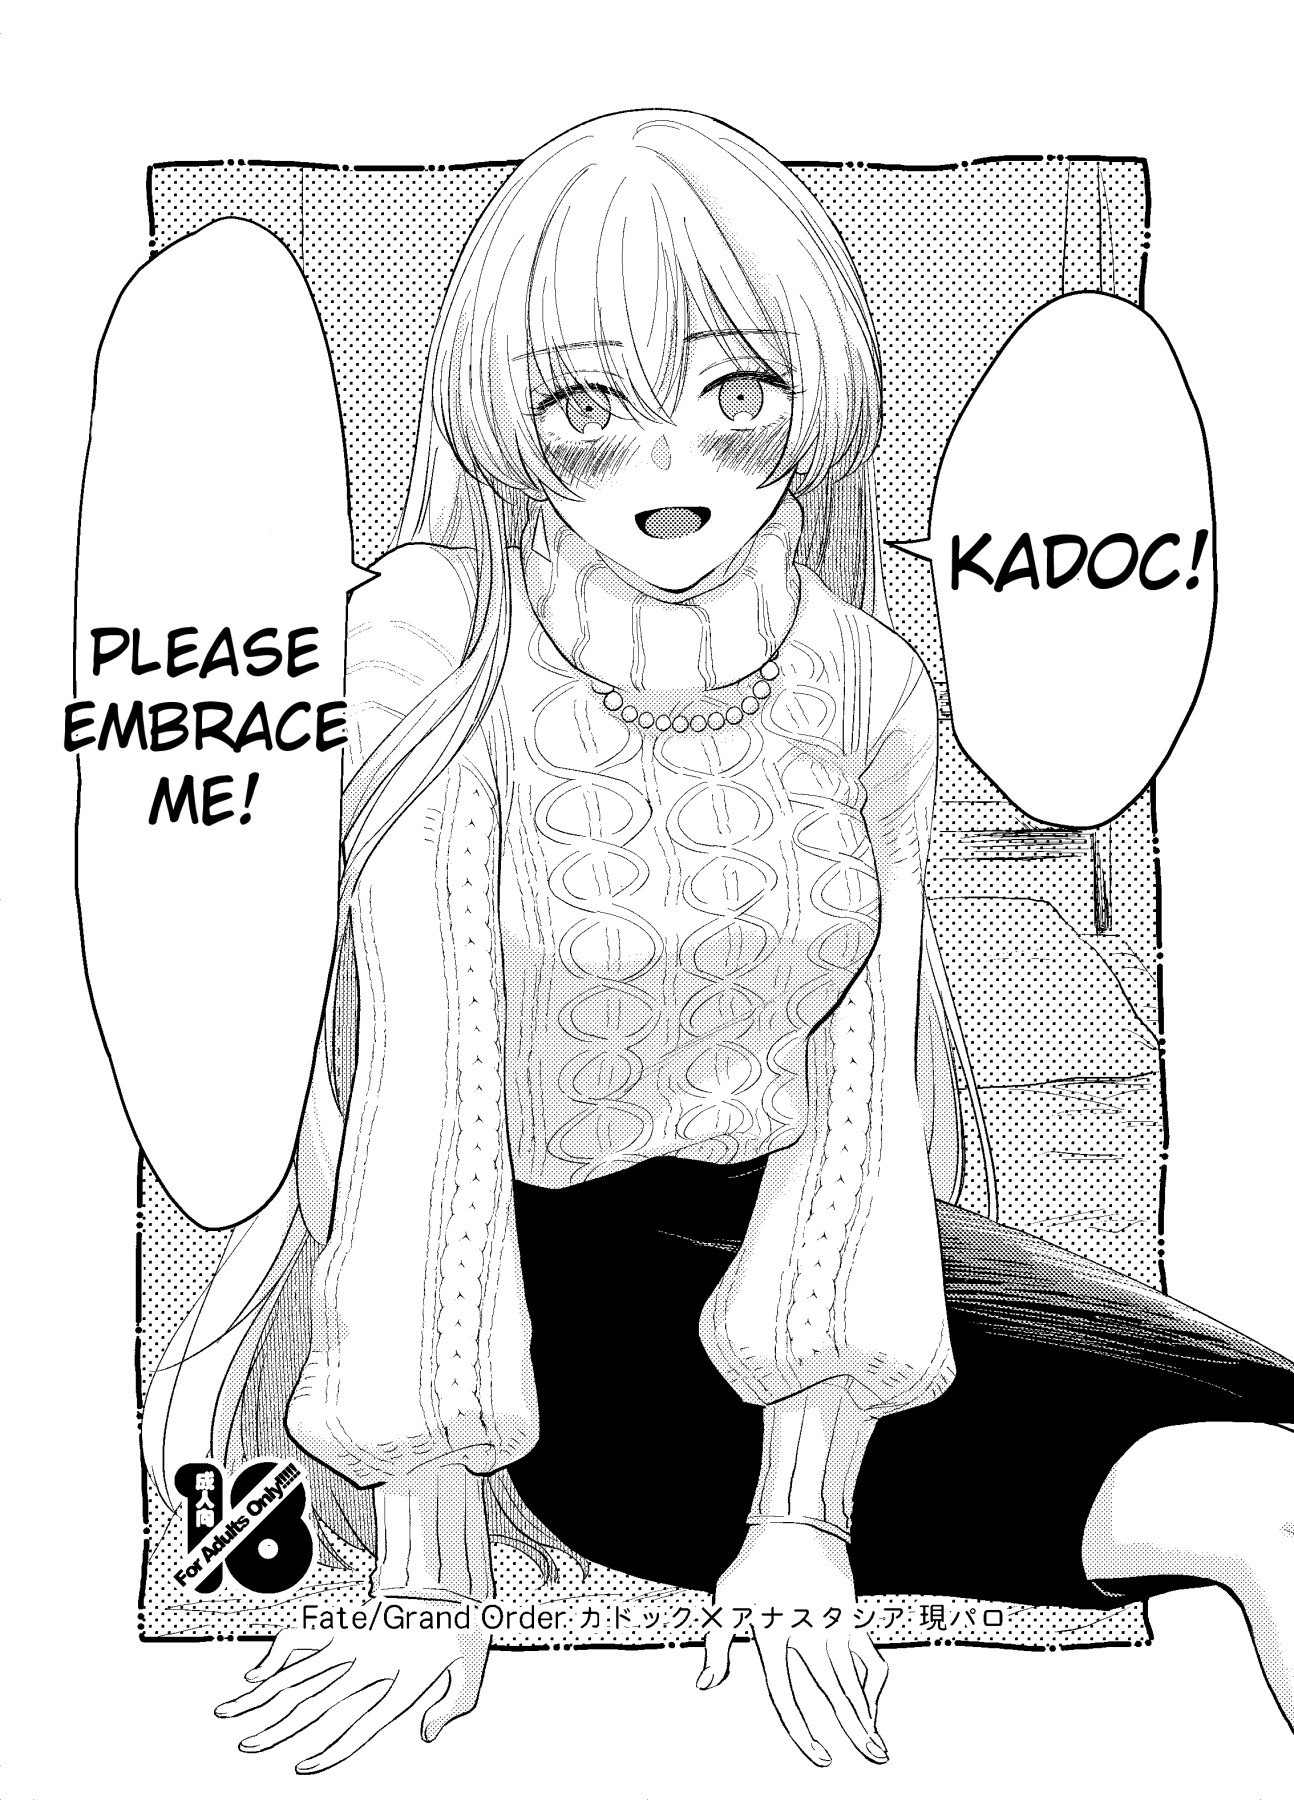 Hentai Manga Comic-Kadoc, Please Embrace Me!-Read-1